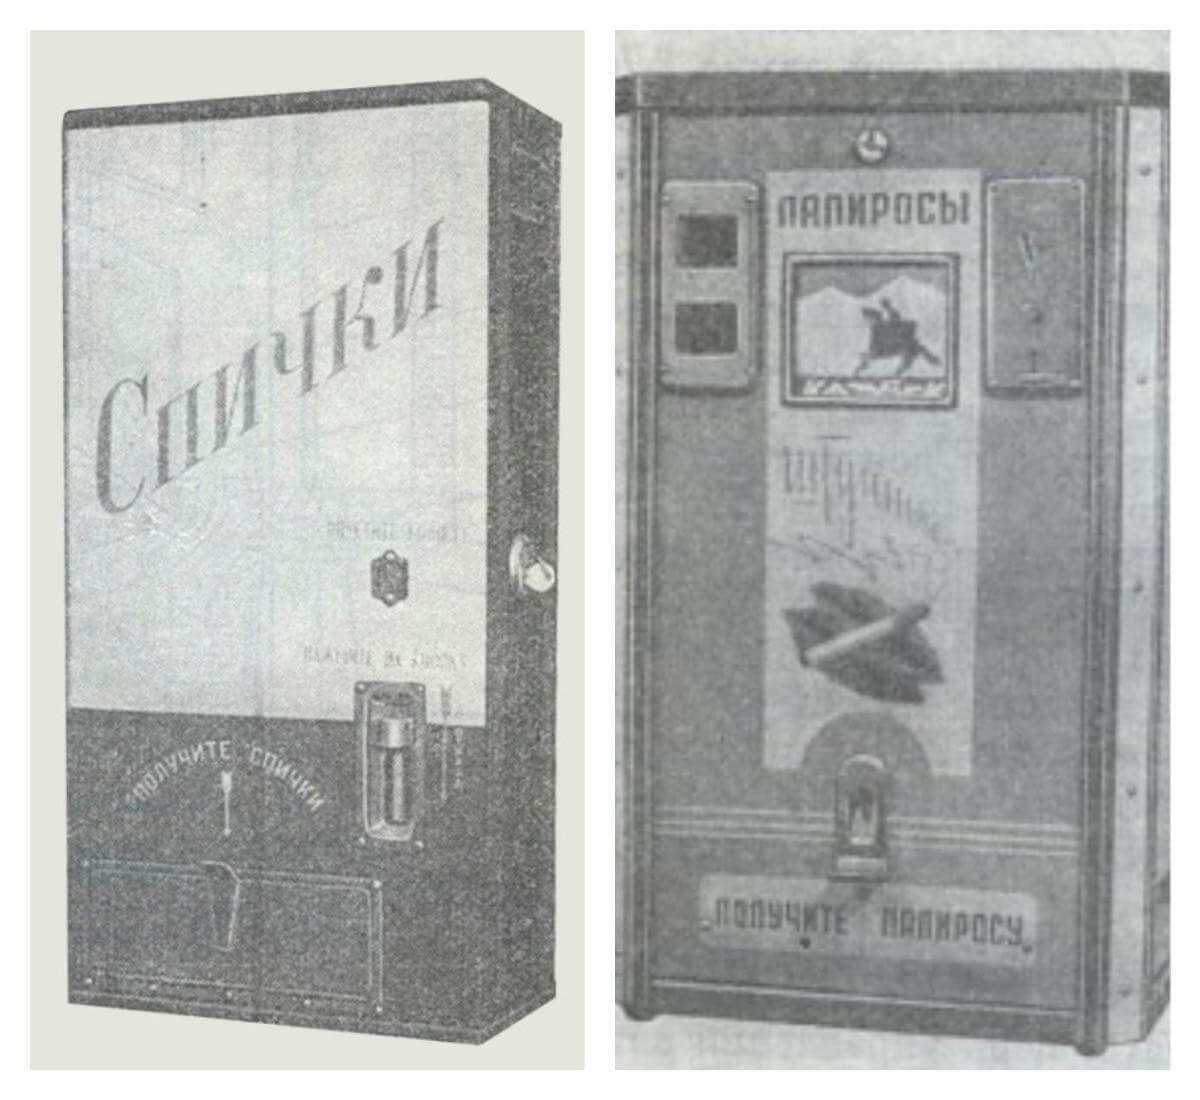 Редкие торговые автоматы СССР. Советские автоматы для продажи спичек и сигарет. Фото.